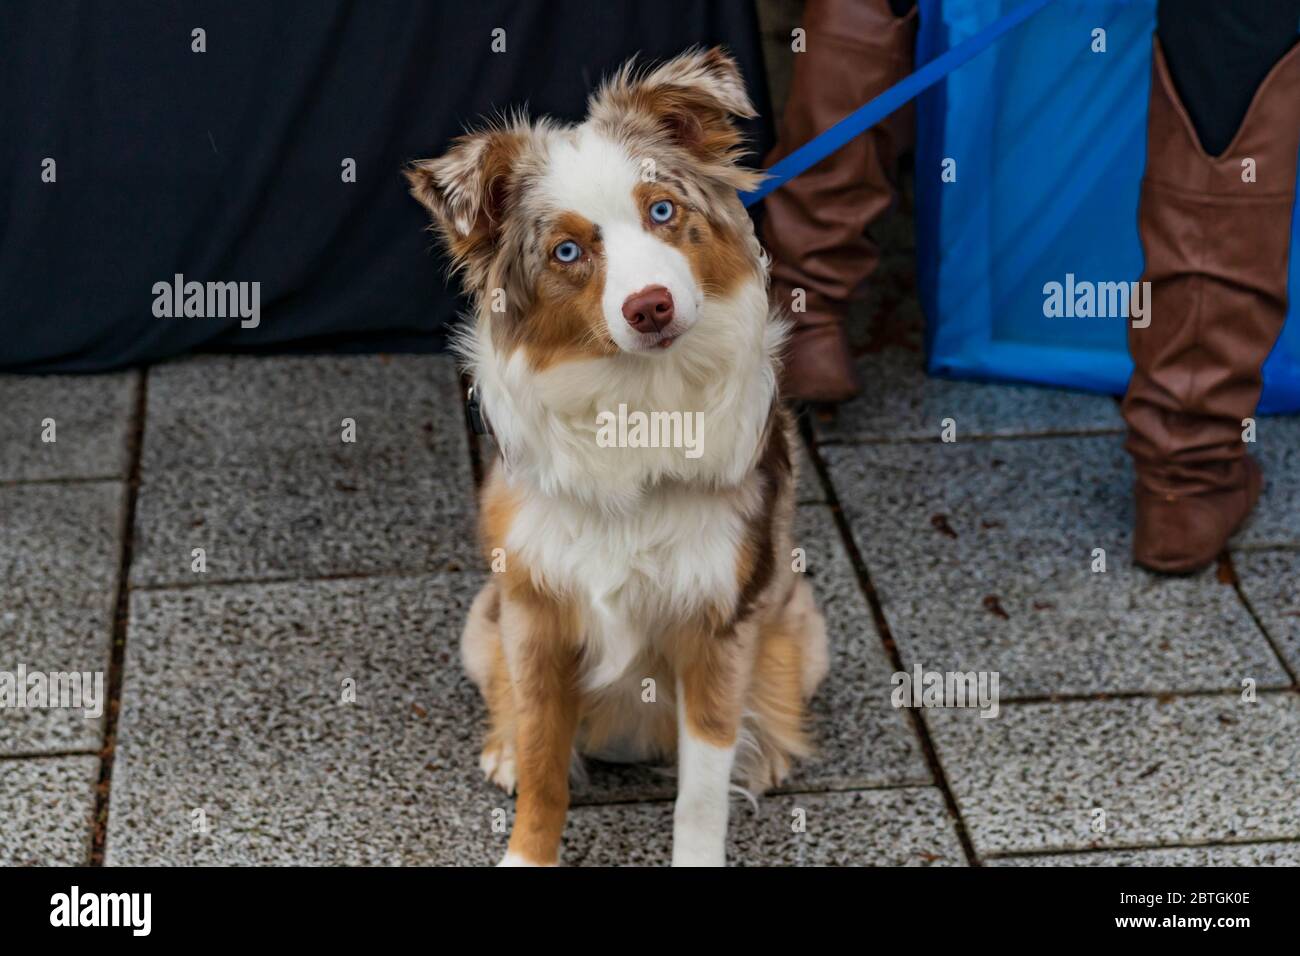 Bin ich nicht der süßeste Hund überhaupt Stockfotografie - Alamy